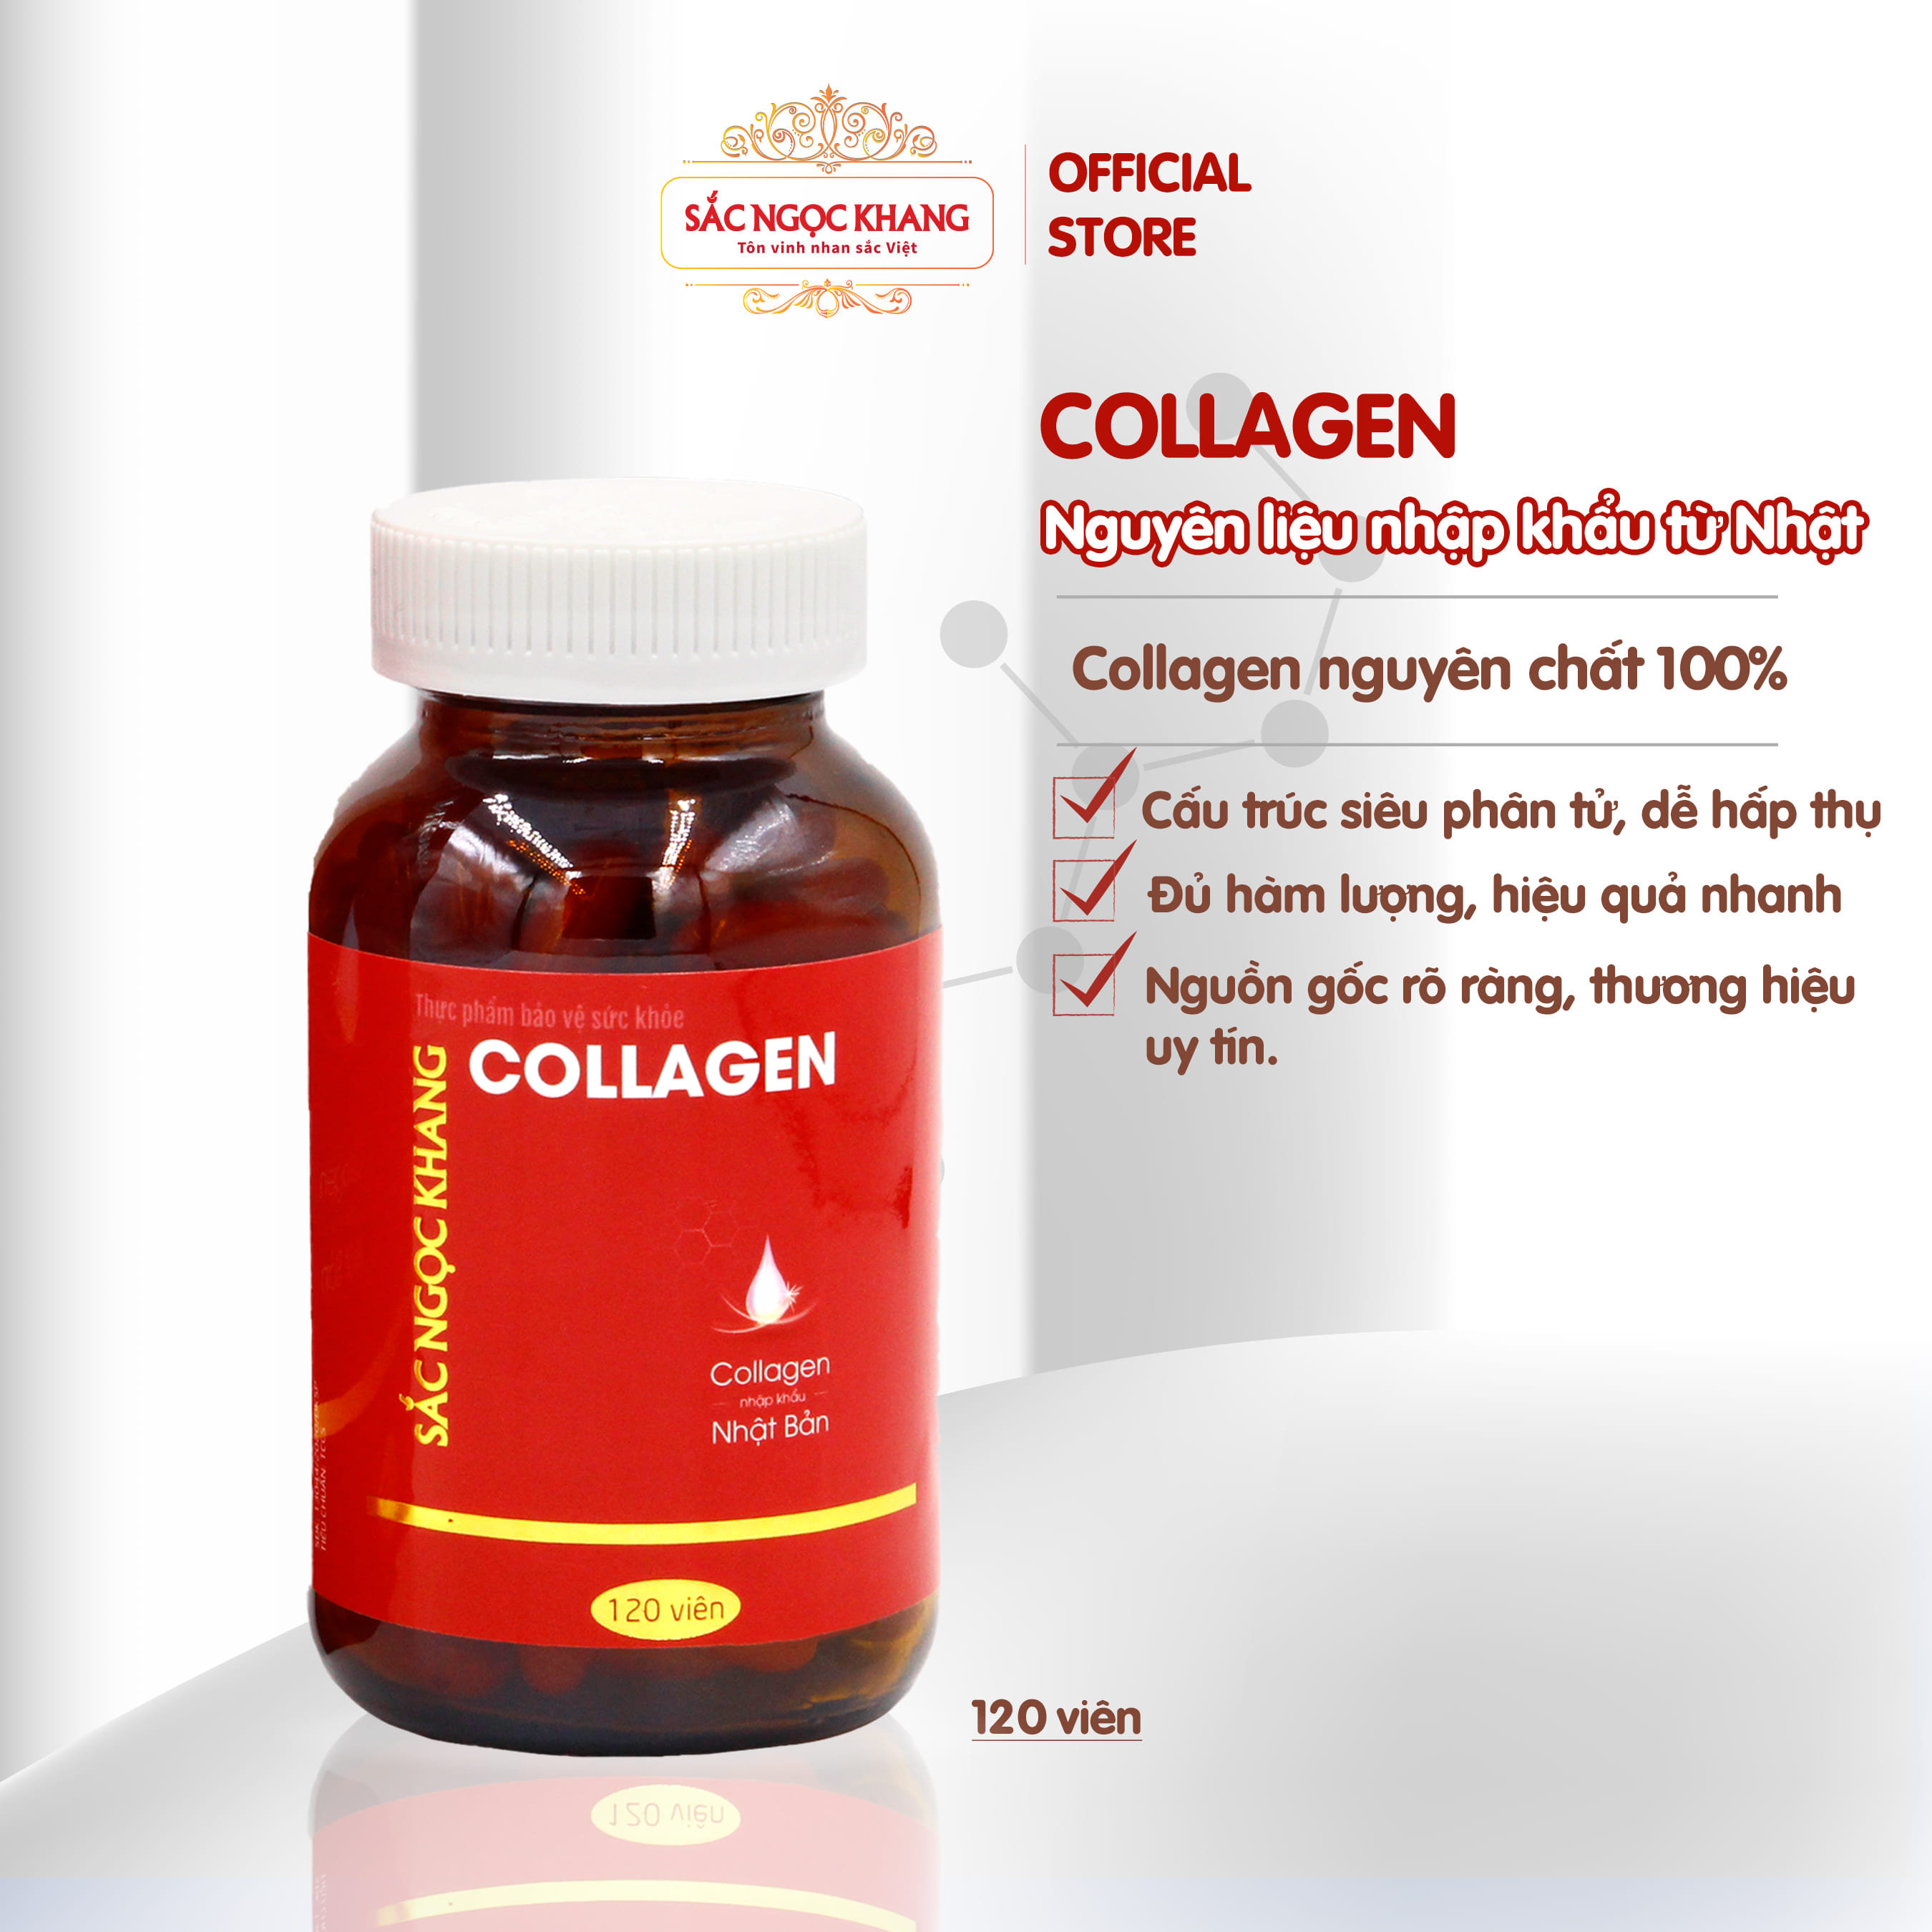 Collagen sắc ngọc khang thế hệ mới 100% từ nhật bản hộp 120 viên - ảnh sản phẩm 2